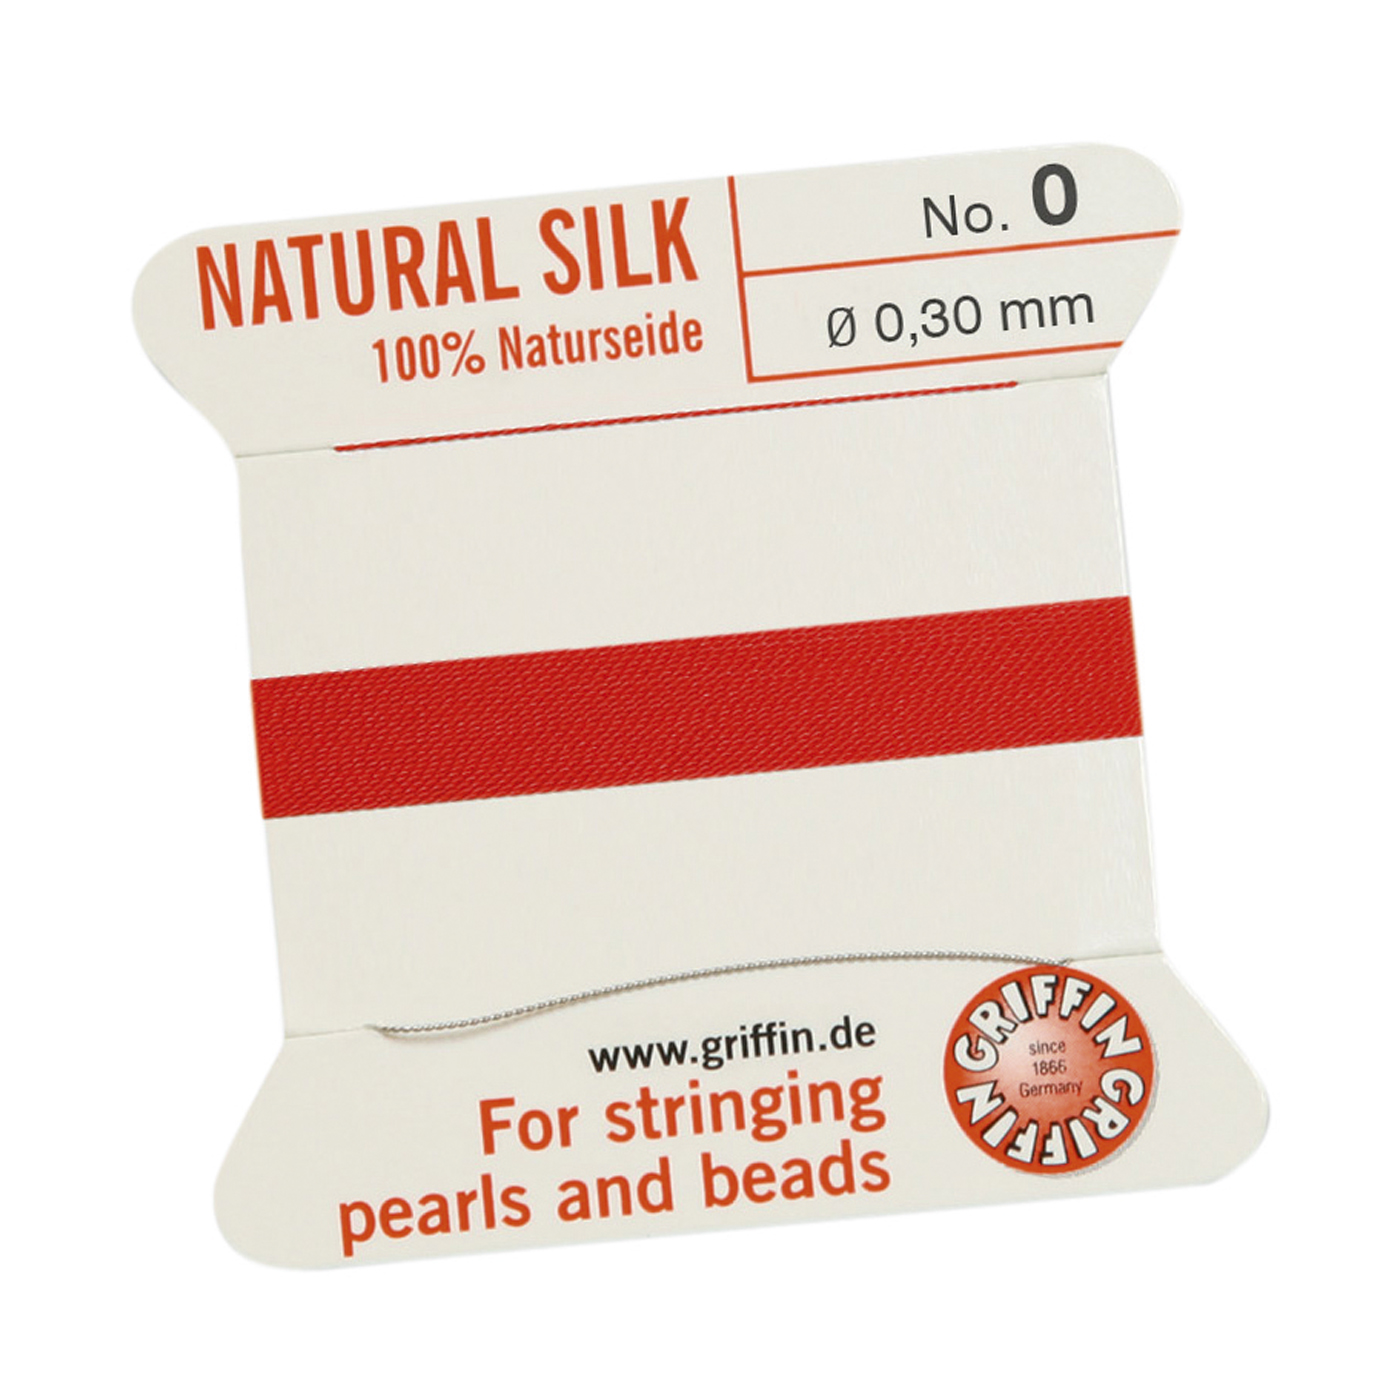 Bead Cord 100% Natural Silk, Red, No. 0 - 2 m